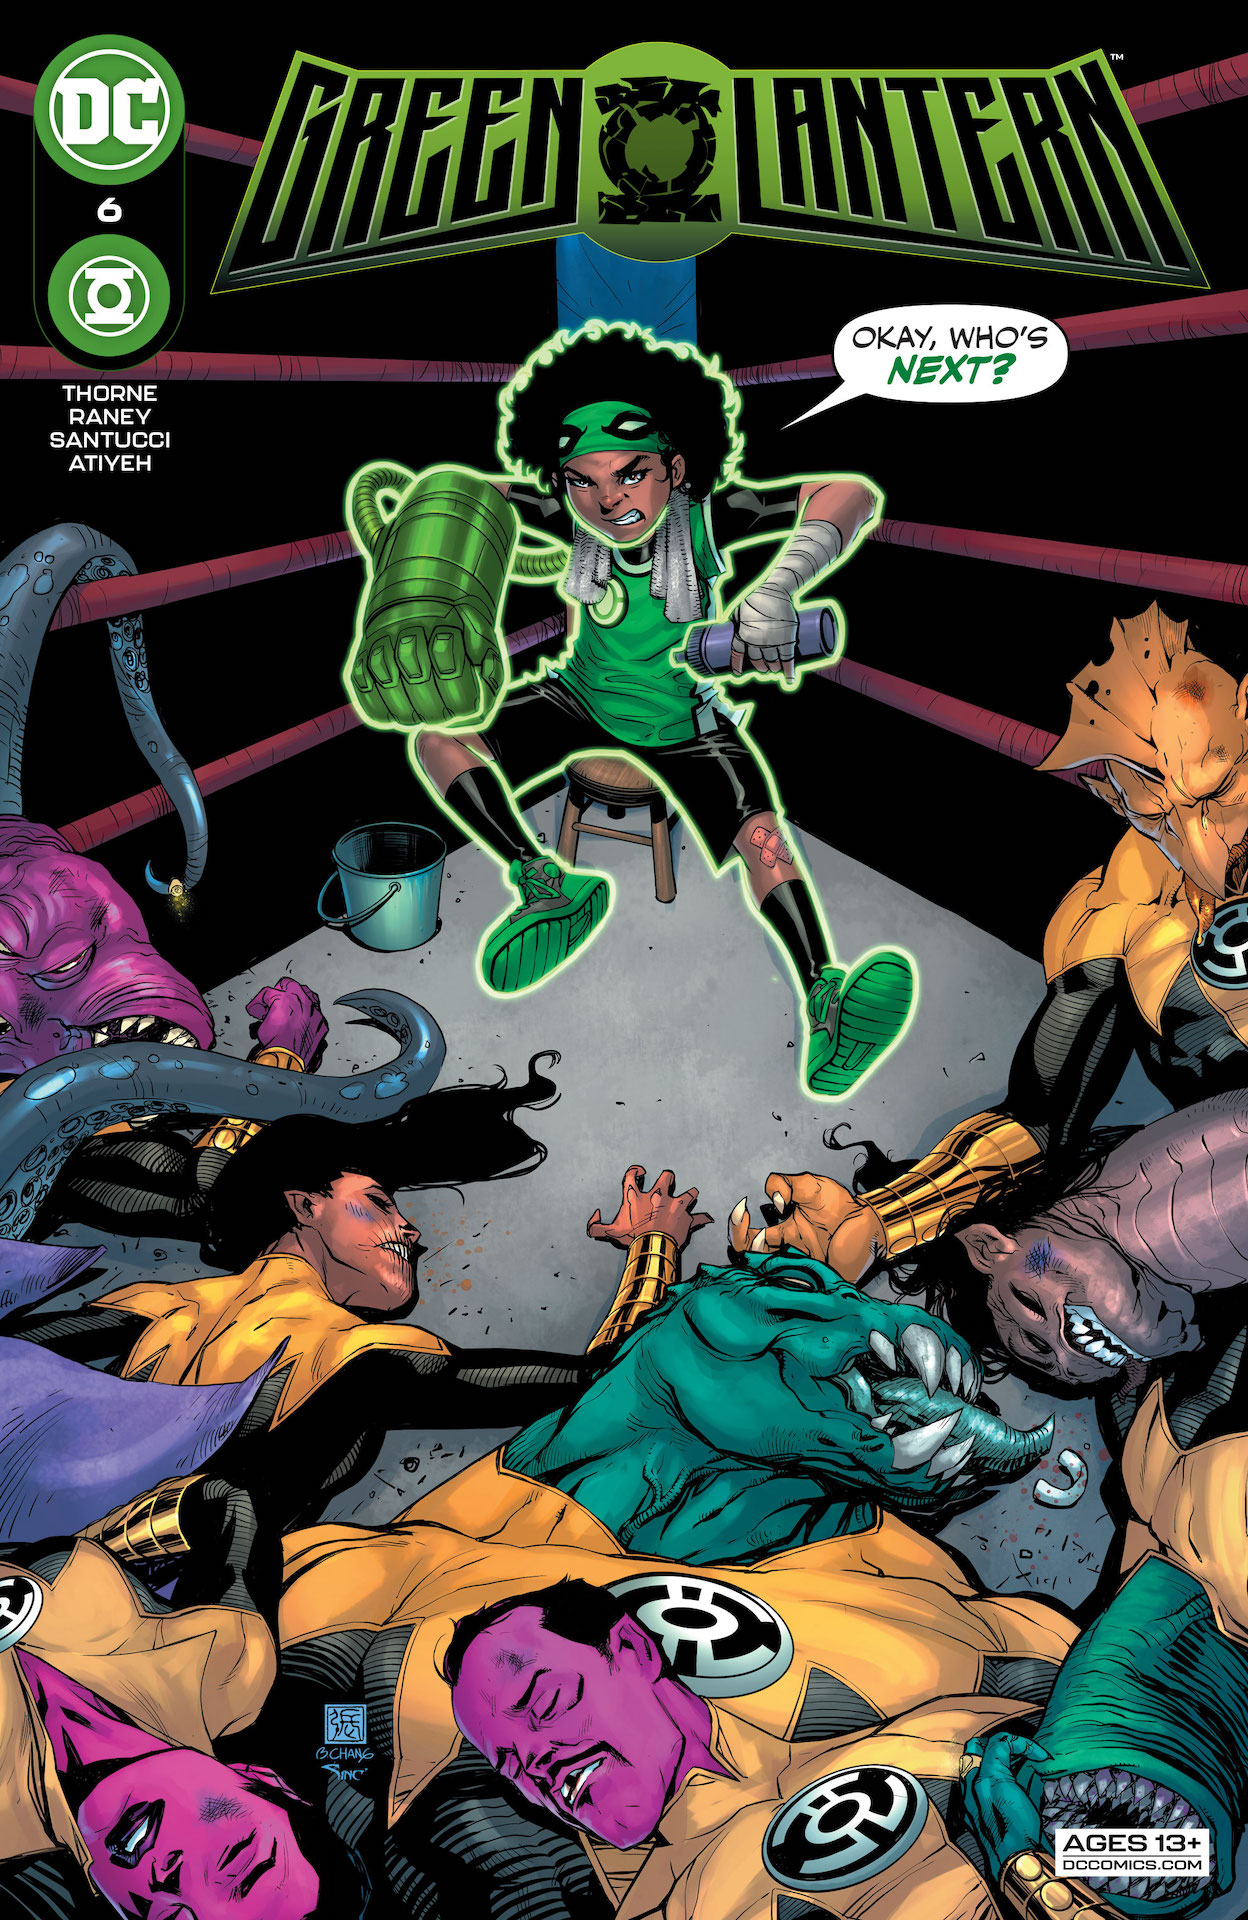 DC Preview: Green Lantern #6